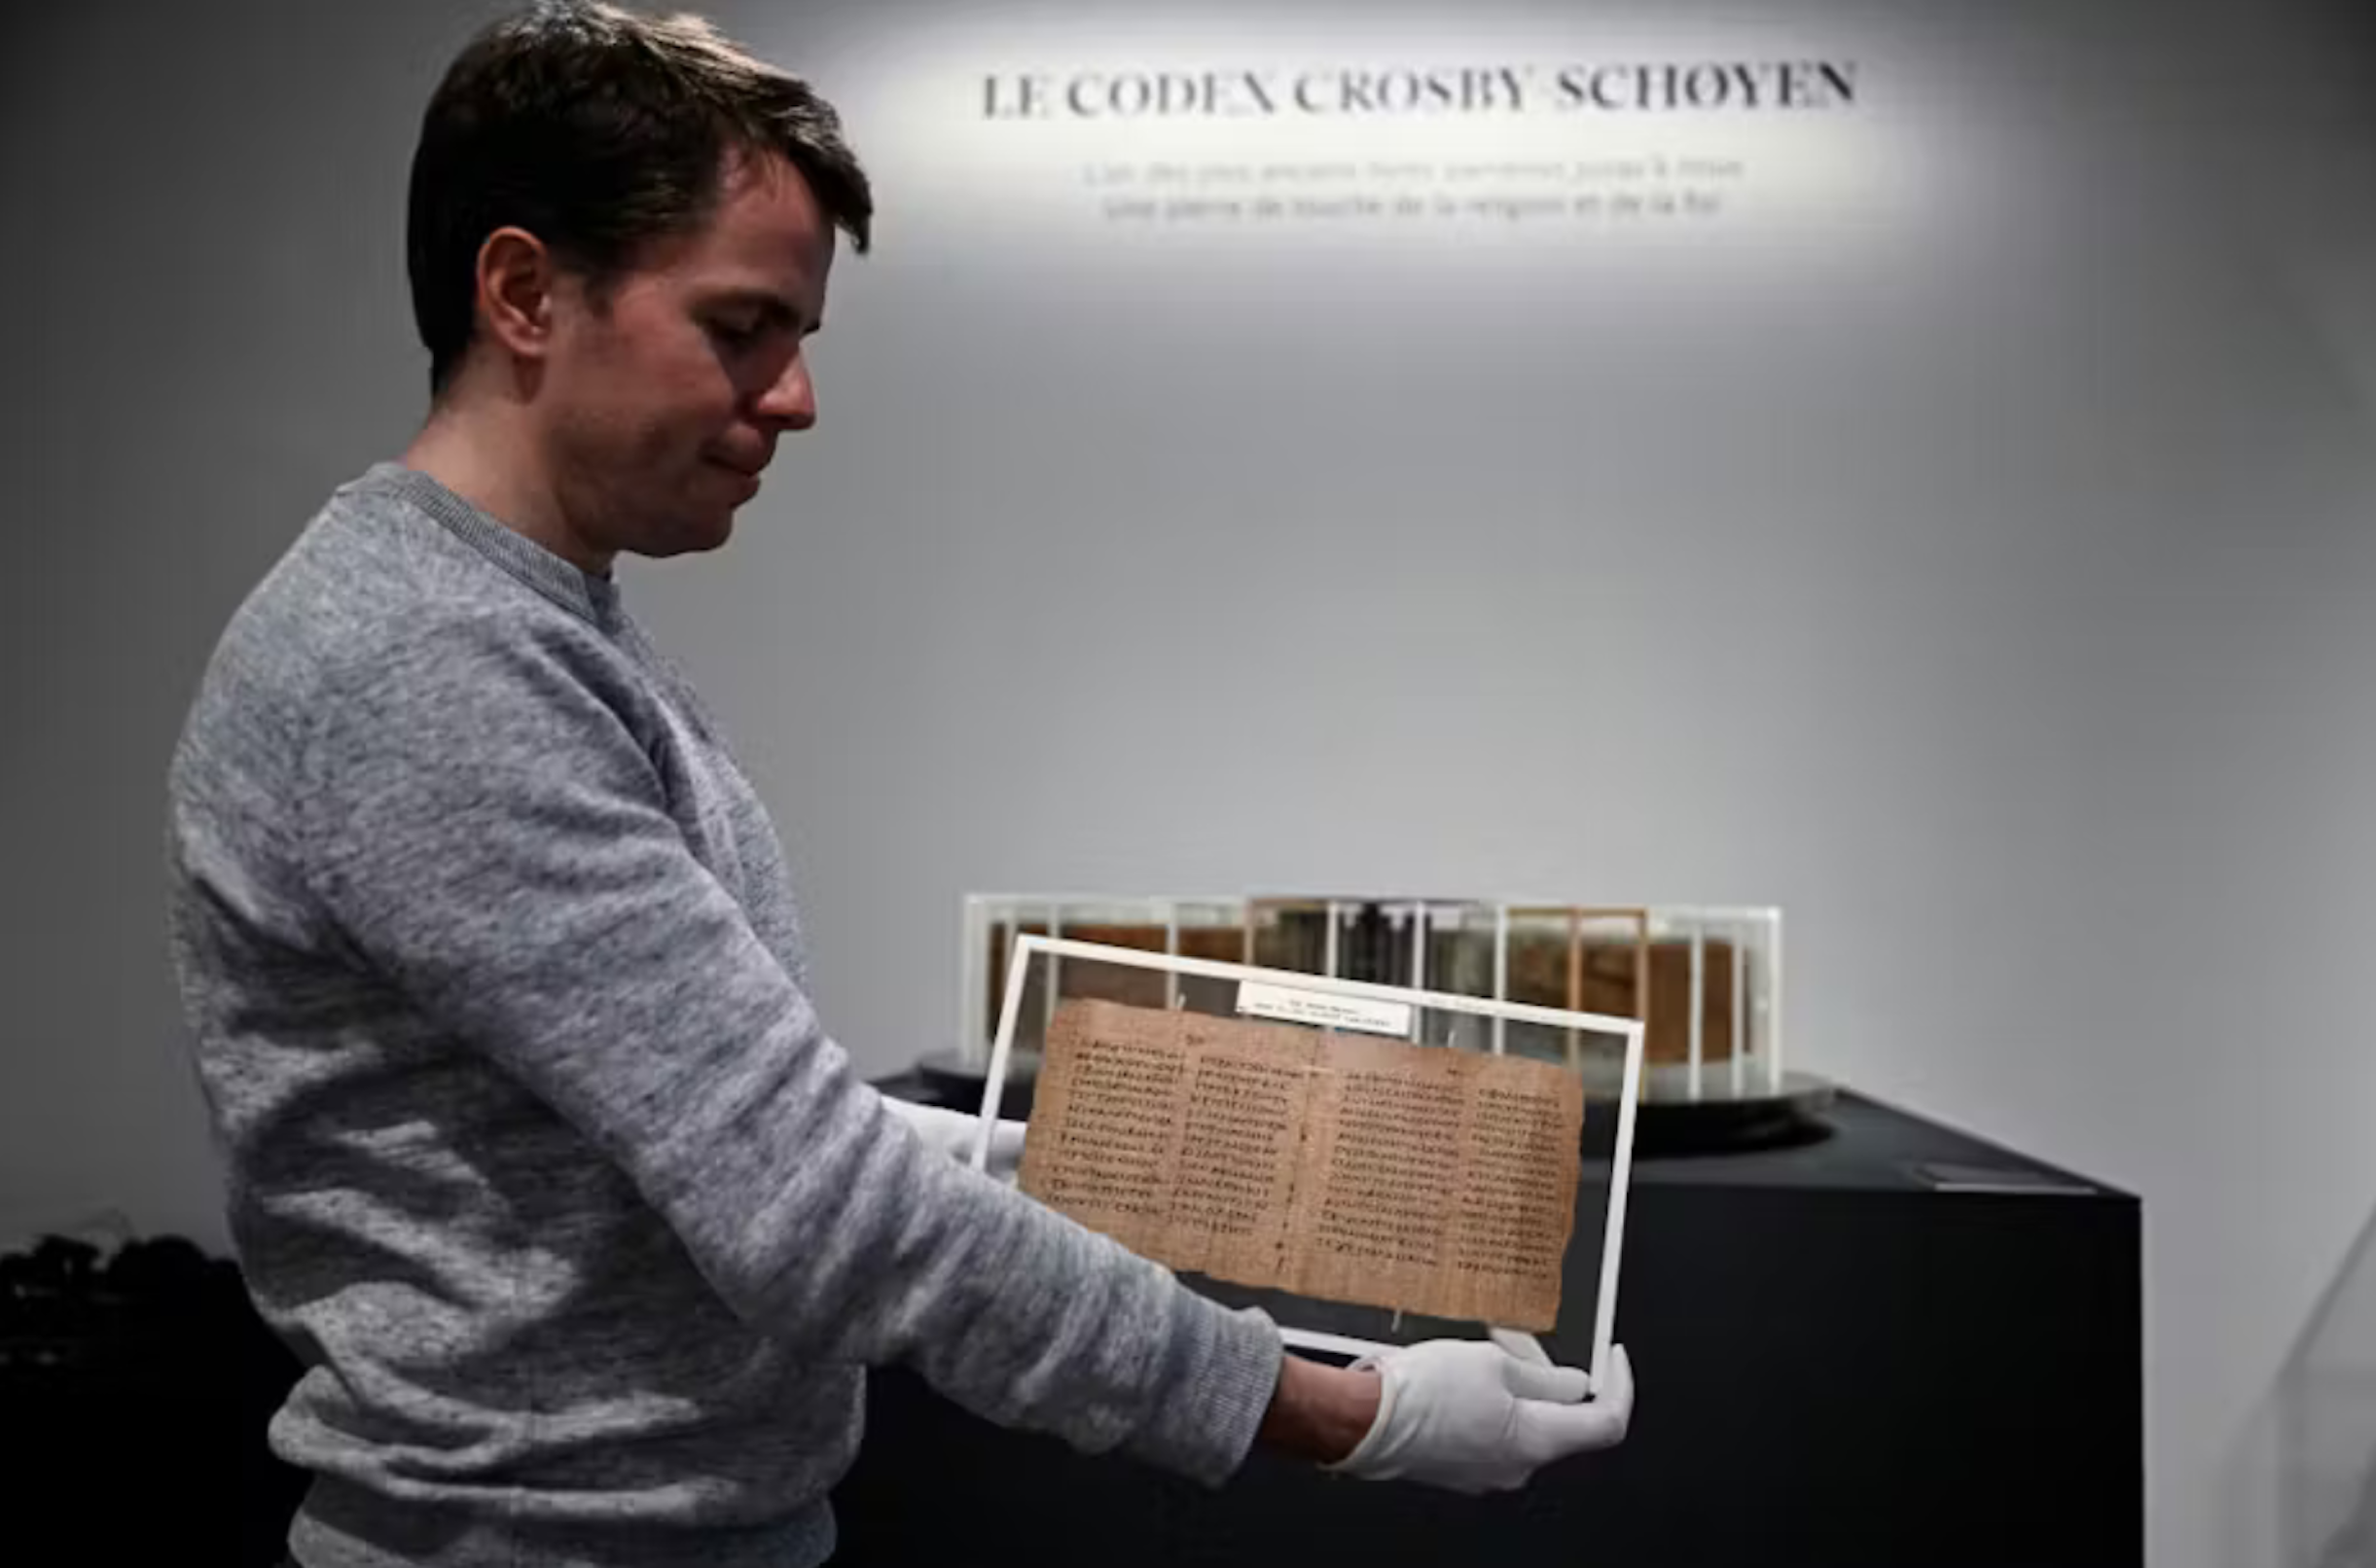 The Crosby-Schoyen Codex